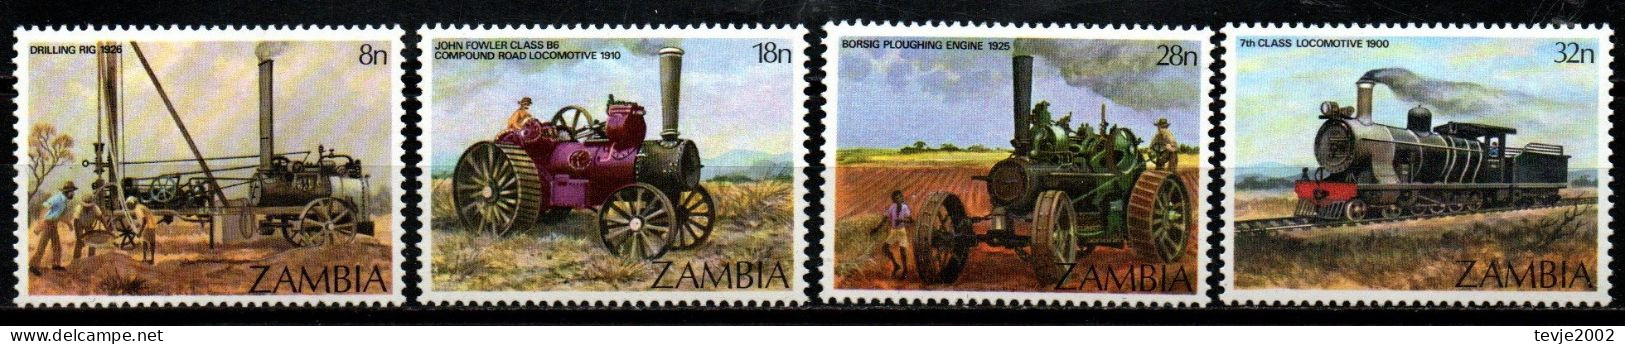 Sambia Zambia 1983 - Mi.Nr. 282 - 285 - Postfrisch MNH - Eisenbahnen Railways - Trains